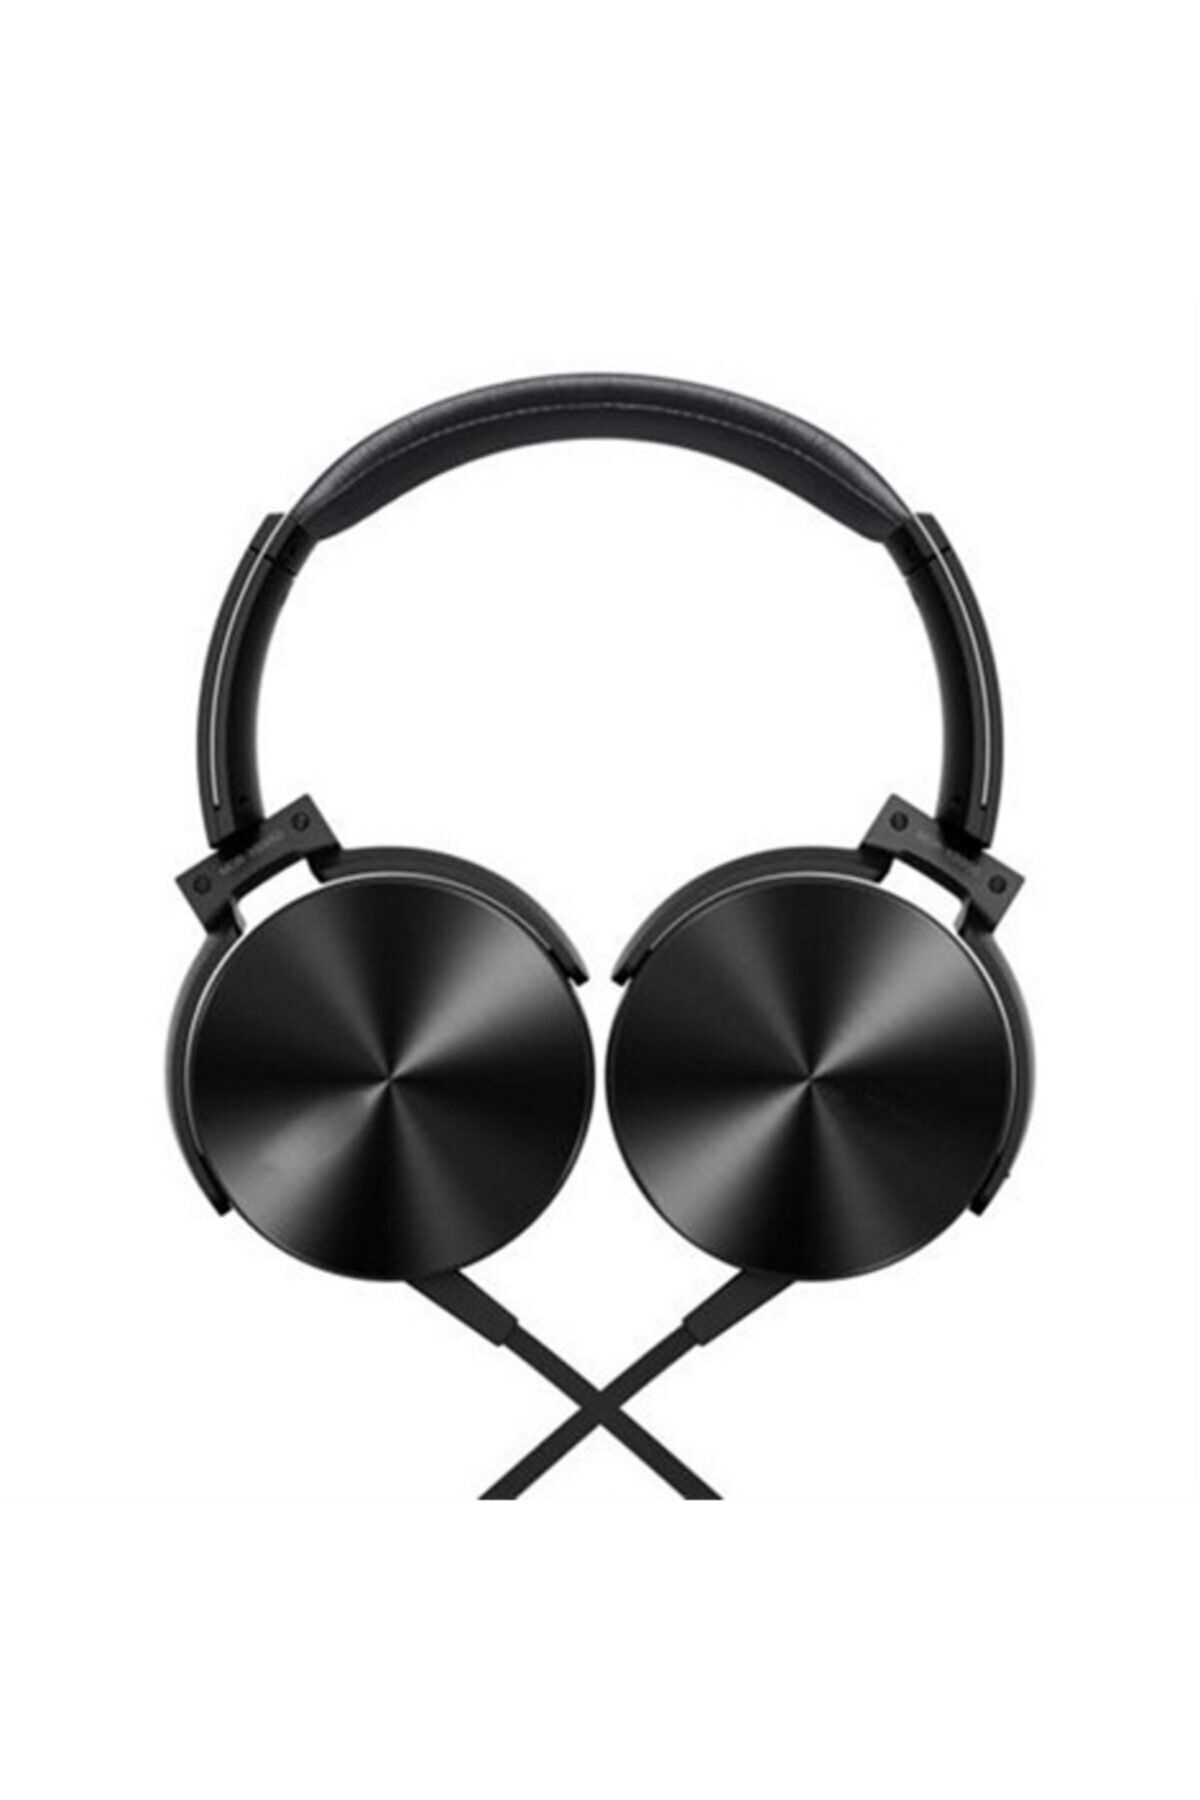 M90 Kampanya Extra Bass Kulaklık Muhteşem Ses Mikrofonlu Oyuncu Gamer Stereo